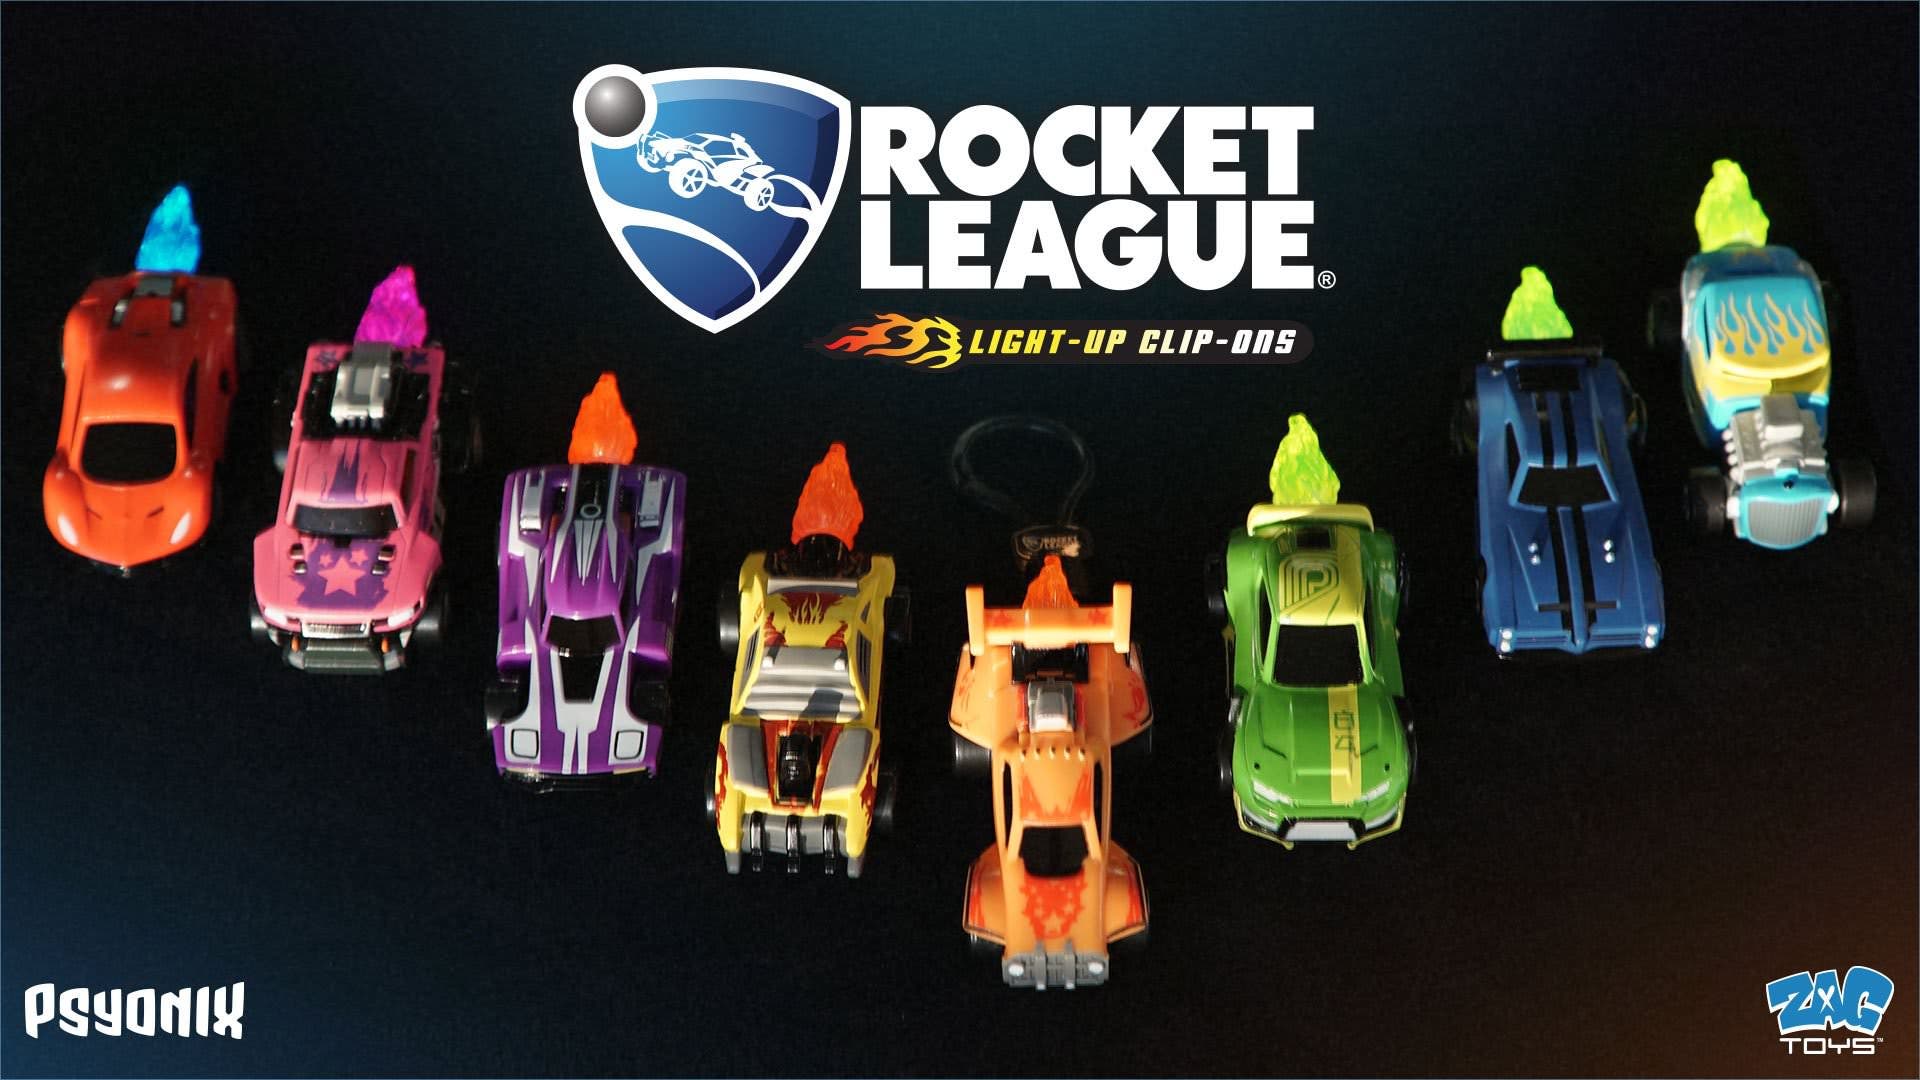 La nueva línea de coches de juguete de Rocket League, Light-Up Clip-On, llegará en marzo